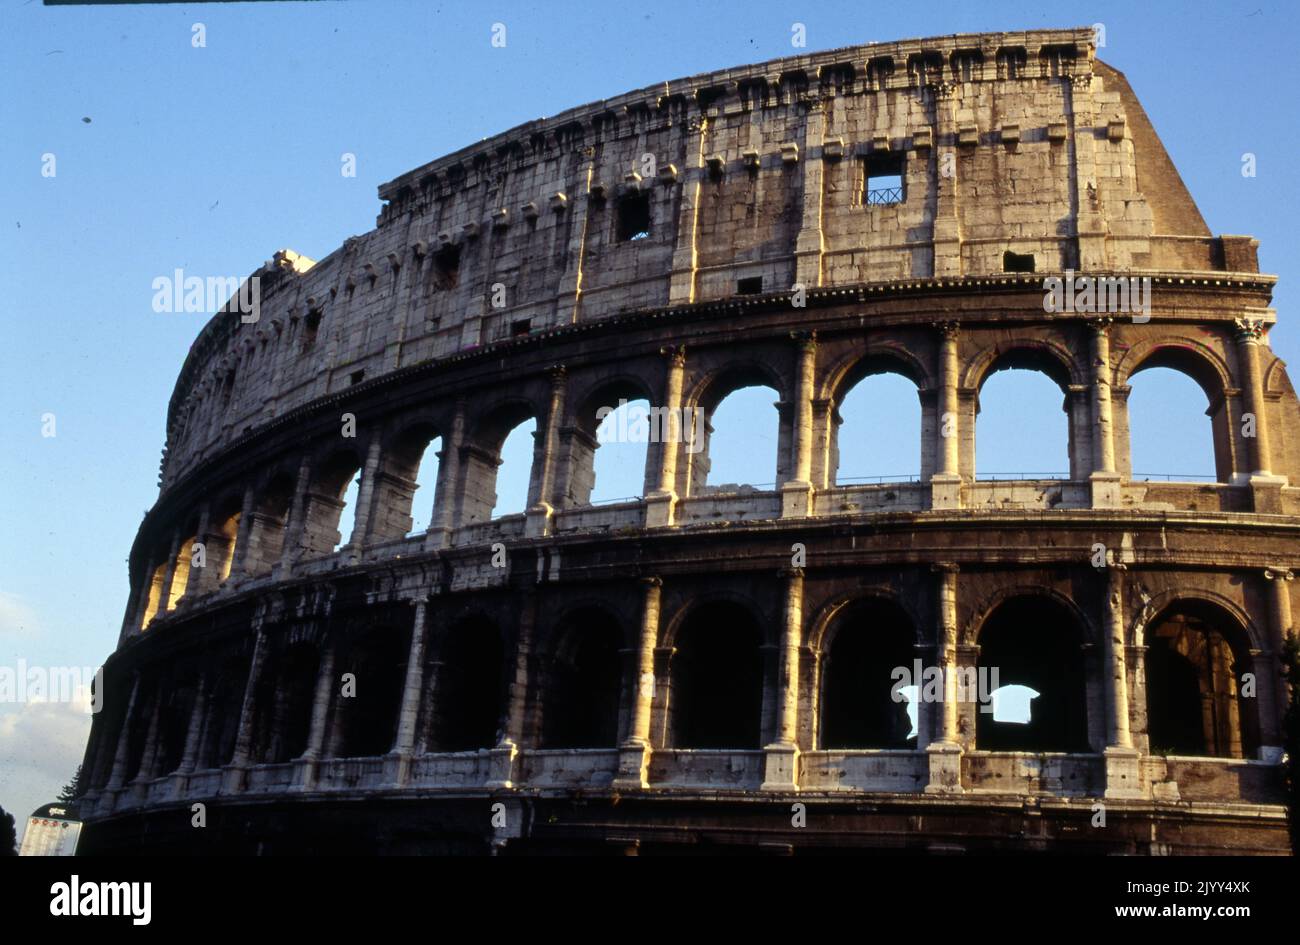 Das Kolosseum oder das Kolosseum Amphitheater, im Zentrum der Stadt Rom, Italien. Es ist das größte Amphitheater, das je gebaut wurde, und besteht aus Travertin, Tuff und Ziegelbeton. Das Kolosseum befindet sich östlich des Forum Romanum. Der Bau begann unter Kaiser Vespasian im Jahre 72 n. Chr. und wurde 80 n. Chr. unter seinem Nachfolger und Erben Titus abgeschlossen. Stockfoto